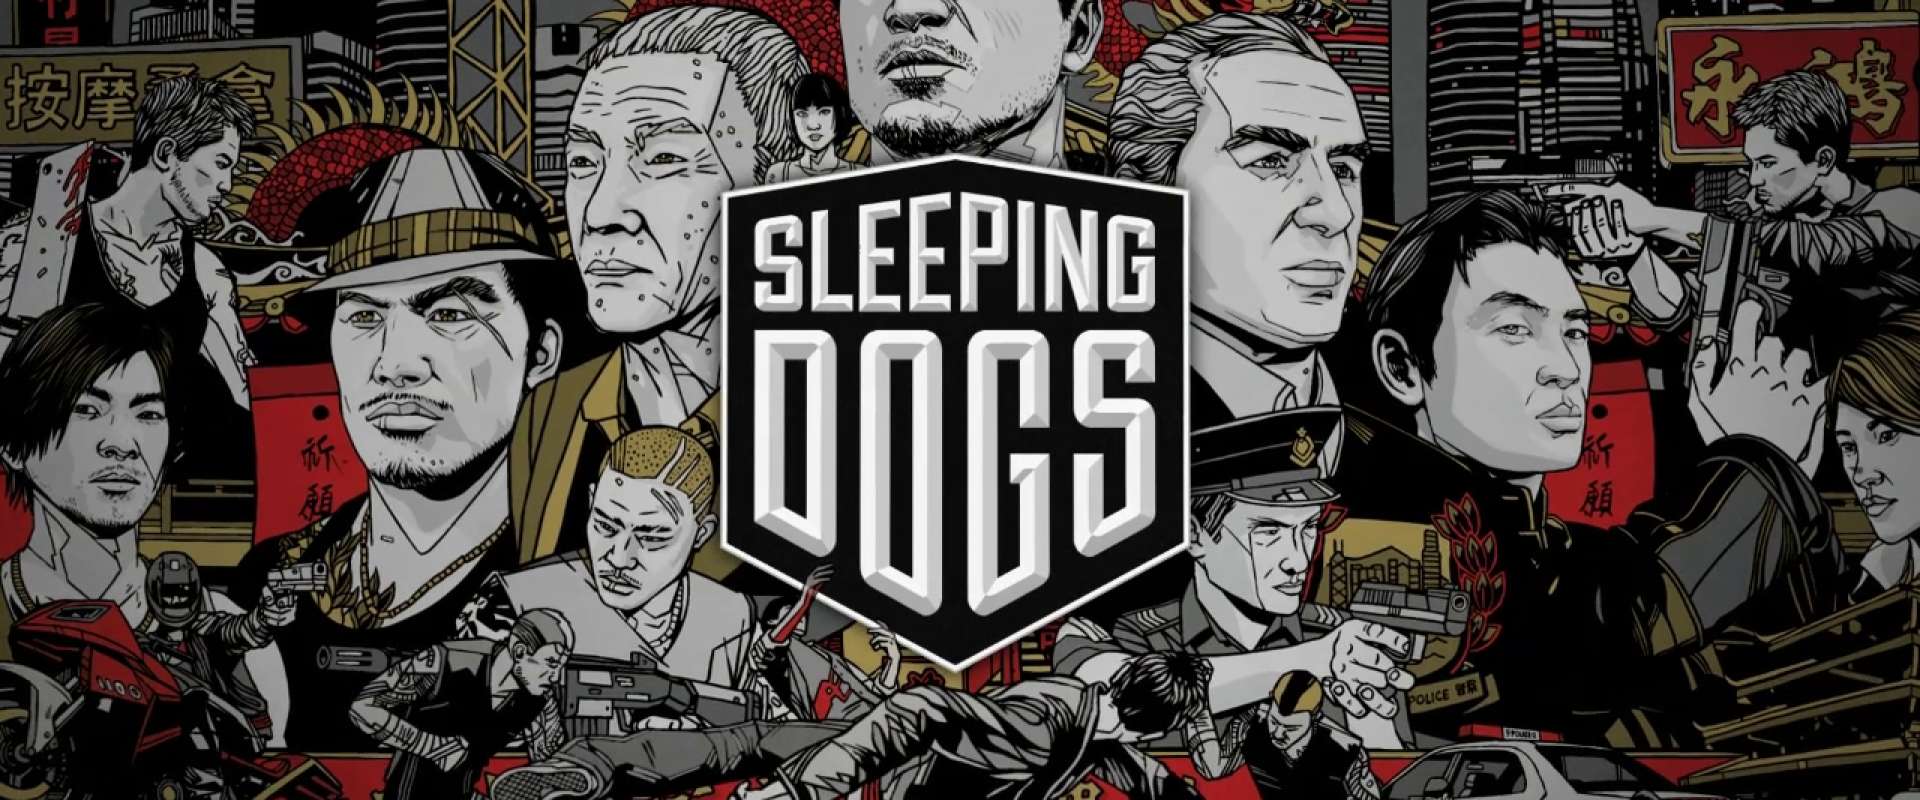 1) PSX Downloads • Sleeping Dogs + Tradução Português BR - PS3 :  Playstation 3 - PS3 (ISOS, PKG e Jogos Traduzidos e Dublados PT BR)